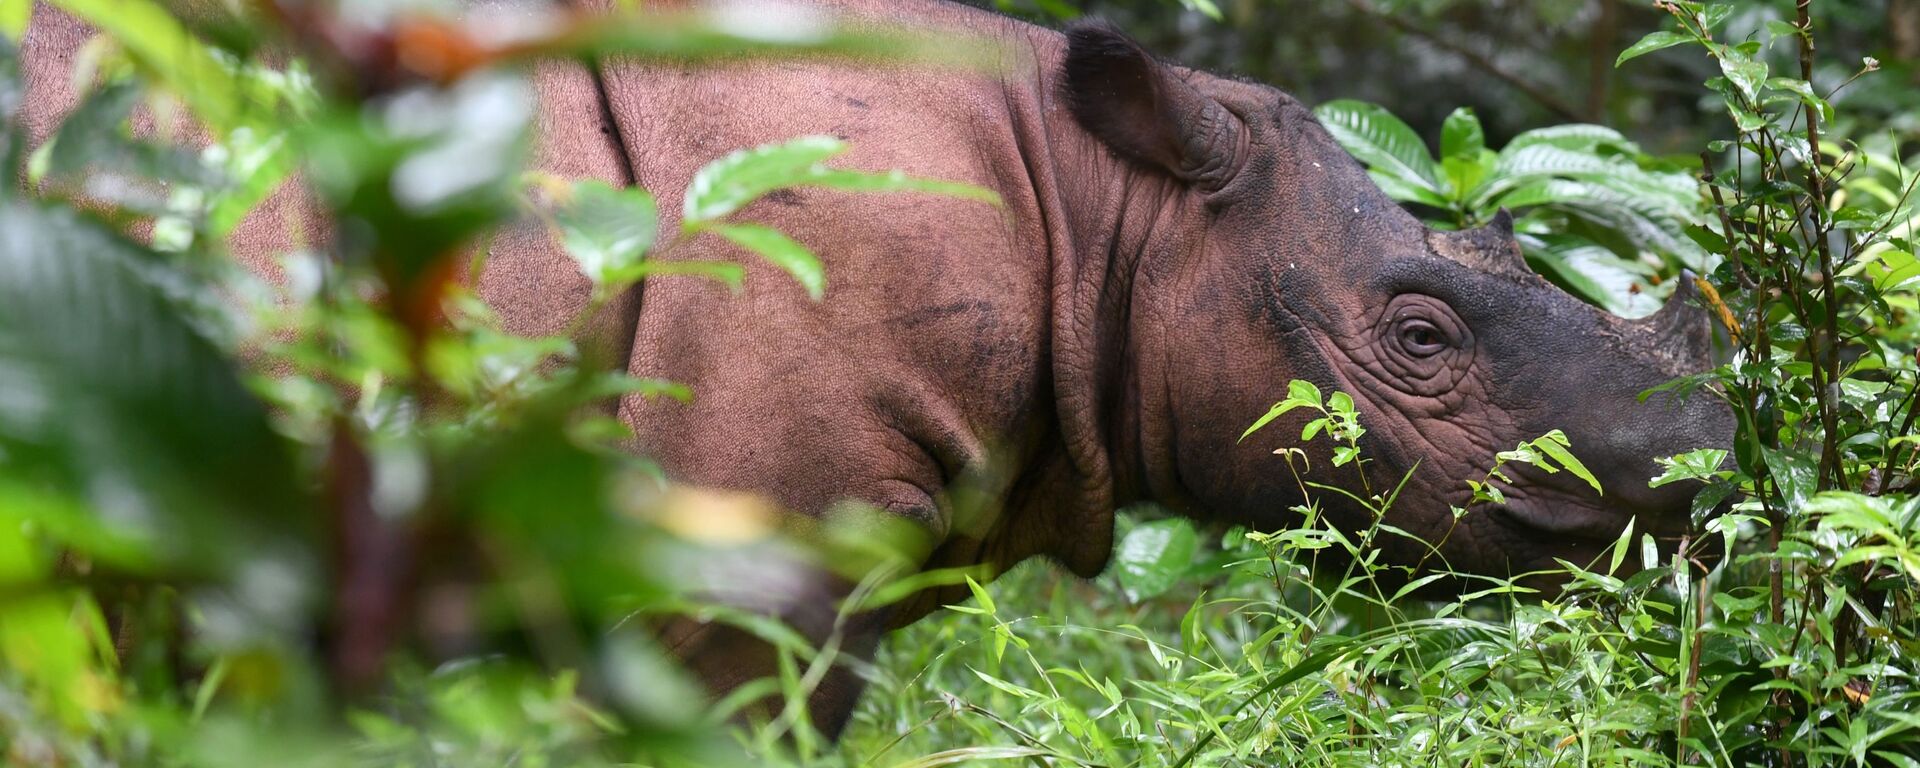 Rinoceronte de Sumatra (imagen referencial) - Sputnik Mundo, 1920, 27.05.2019